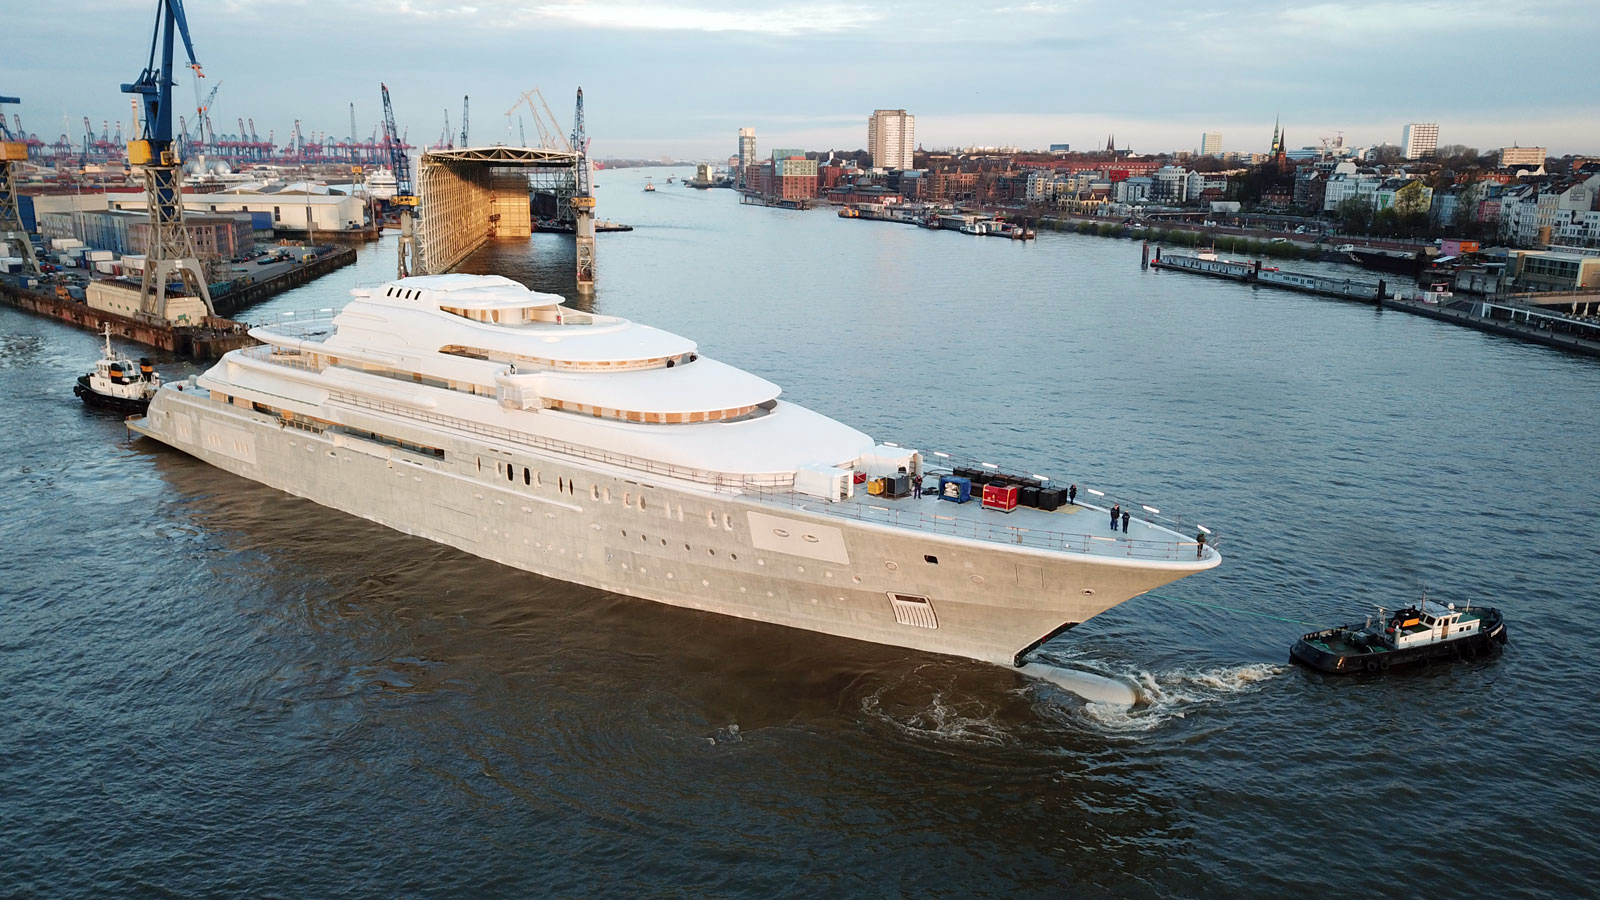 Project Opera is het grootste schip dat momenteel in aanbouw is. (Foto Superyacht Times)